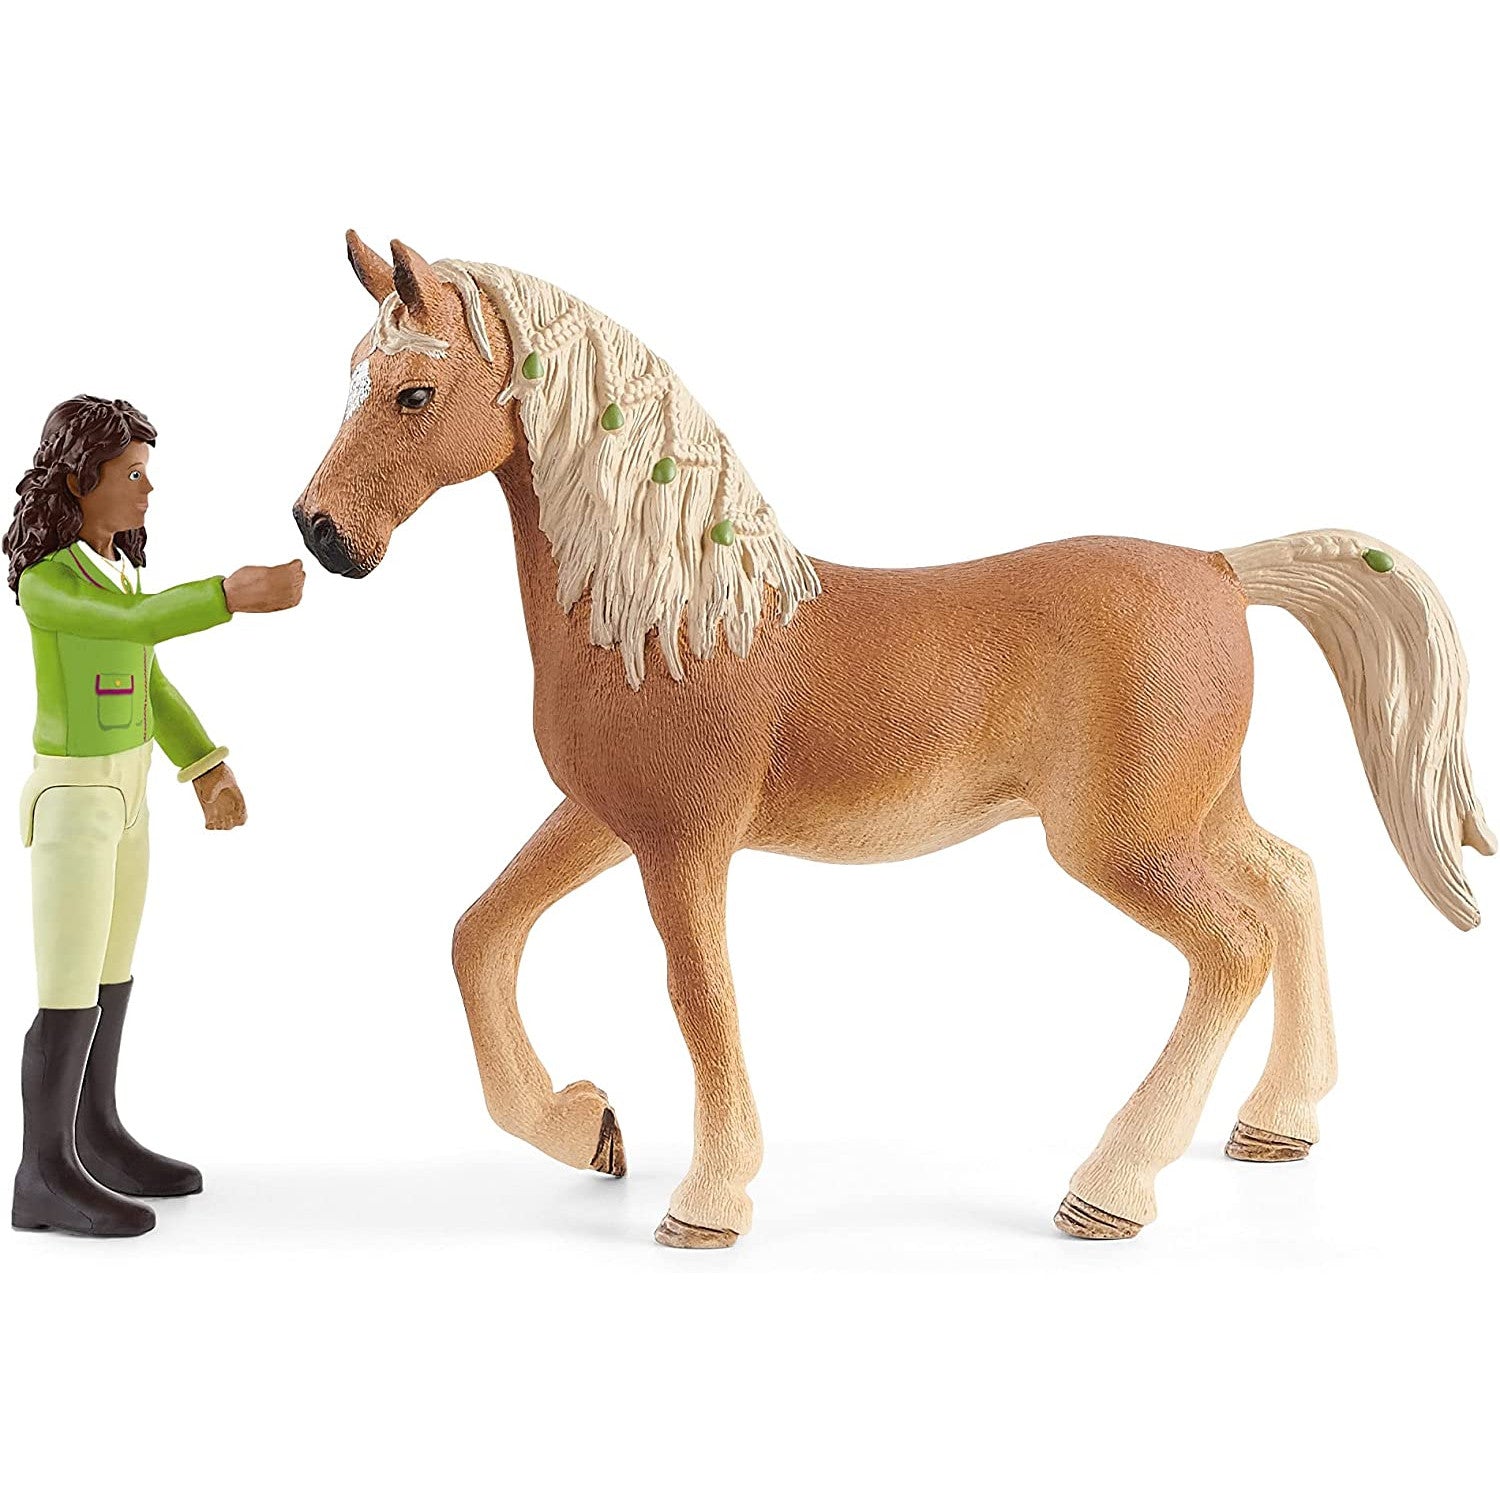 Schleich Horse Club Quarter Horse Mare Toy Figurine 